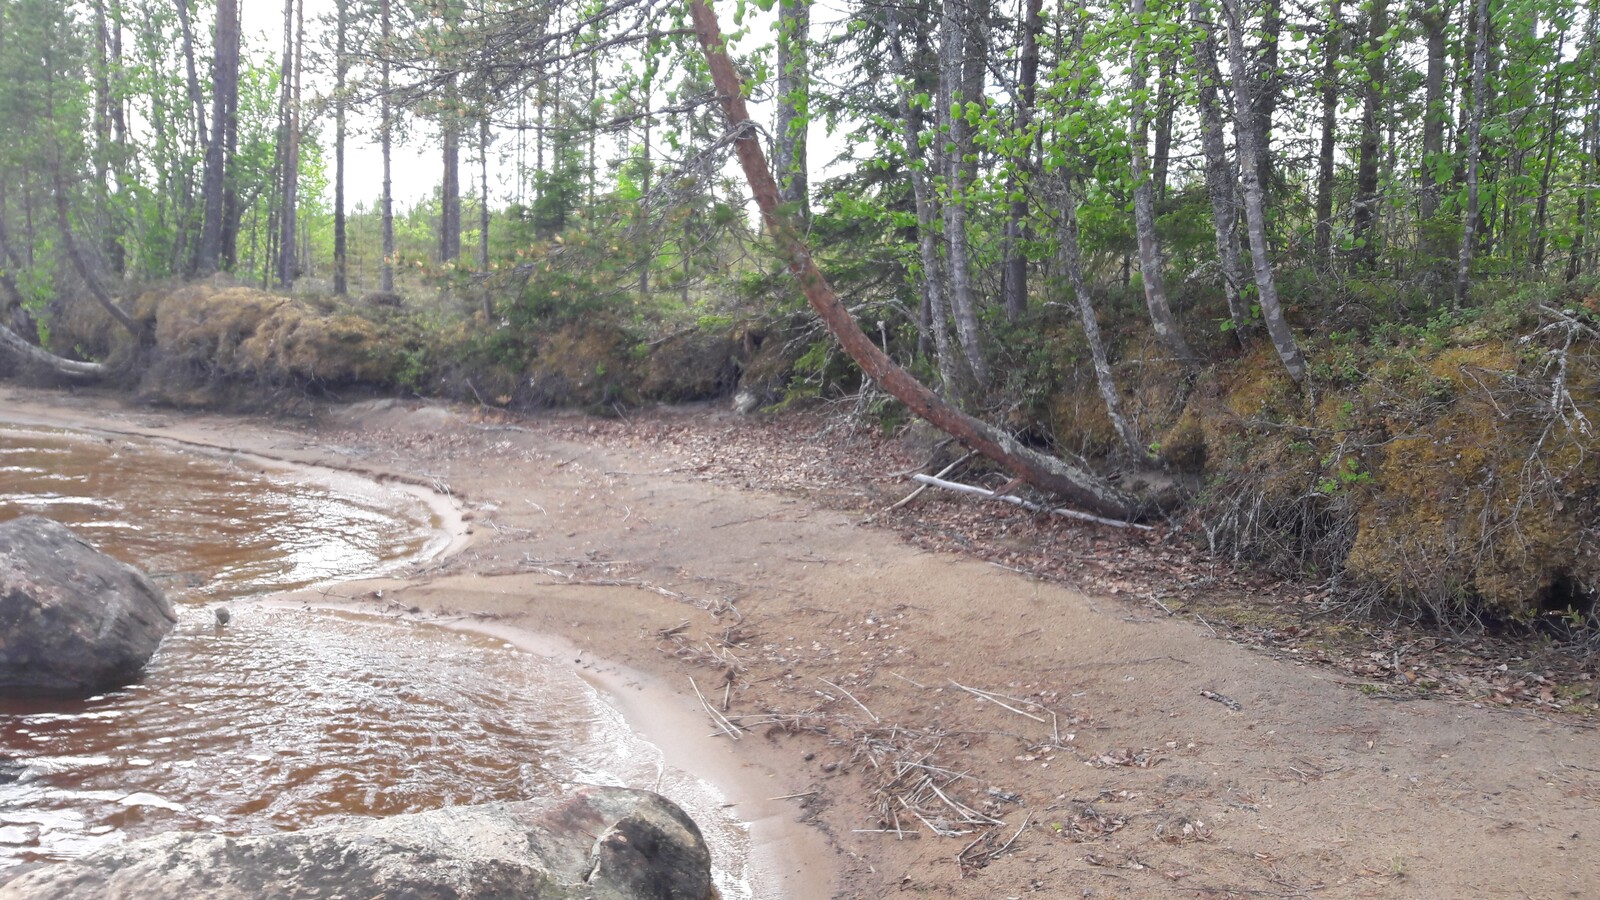 Hiekkarantaa reunustaa matala rantatörmä, jolla kasvaa mäntyjä. Rantavedesä on kiviä.